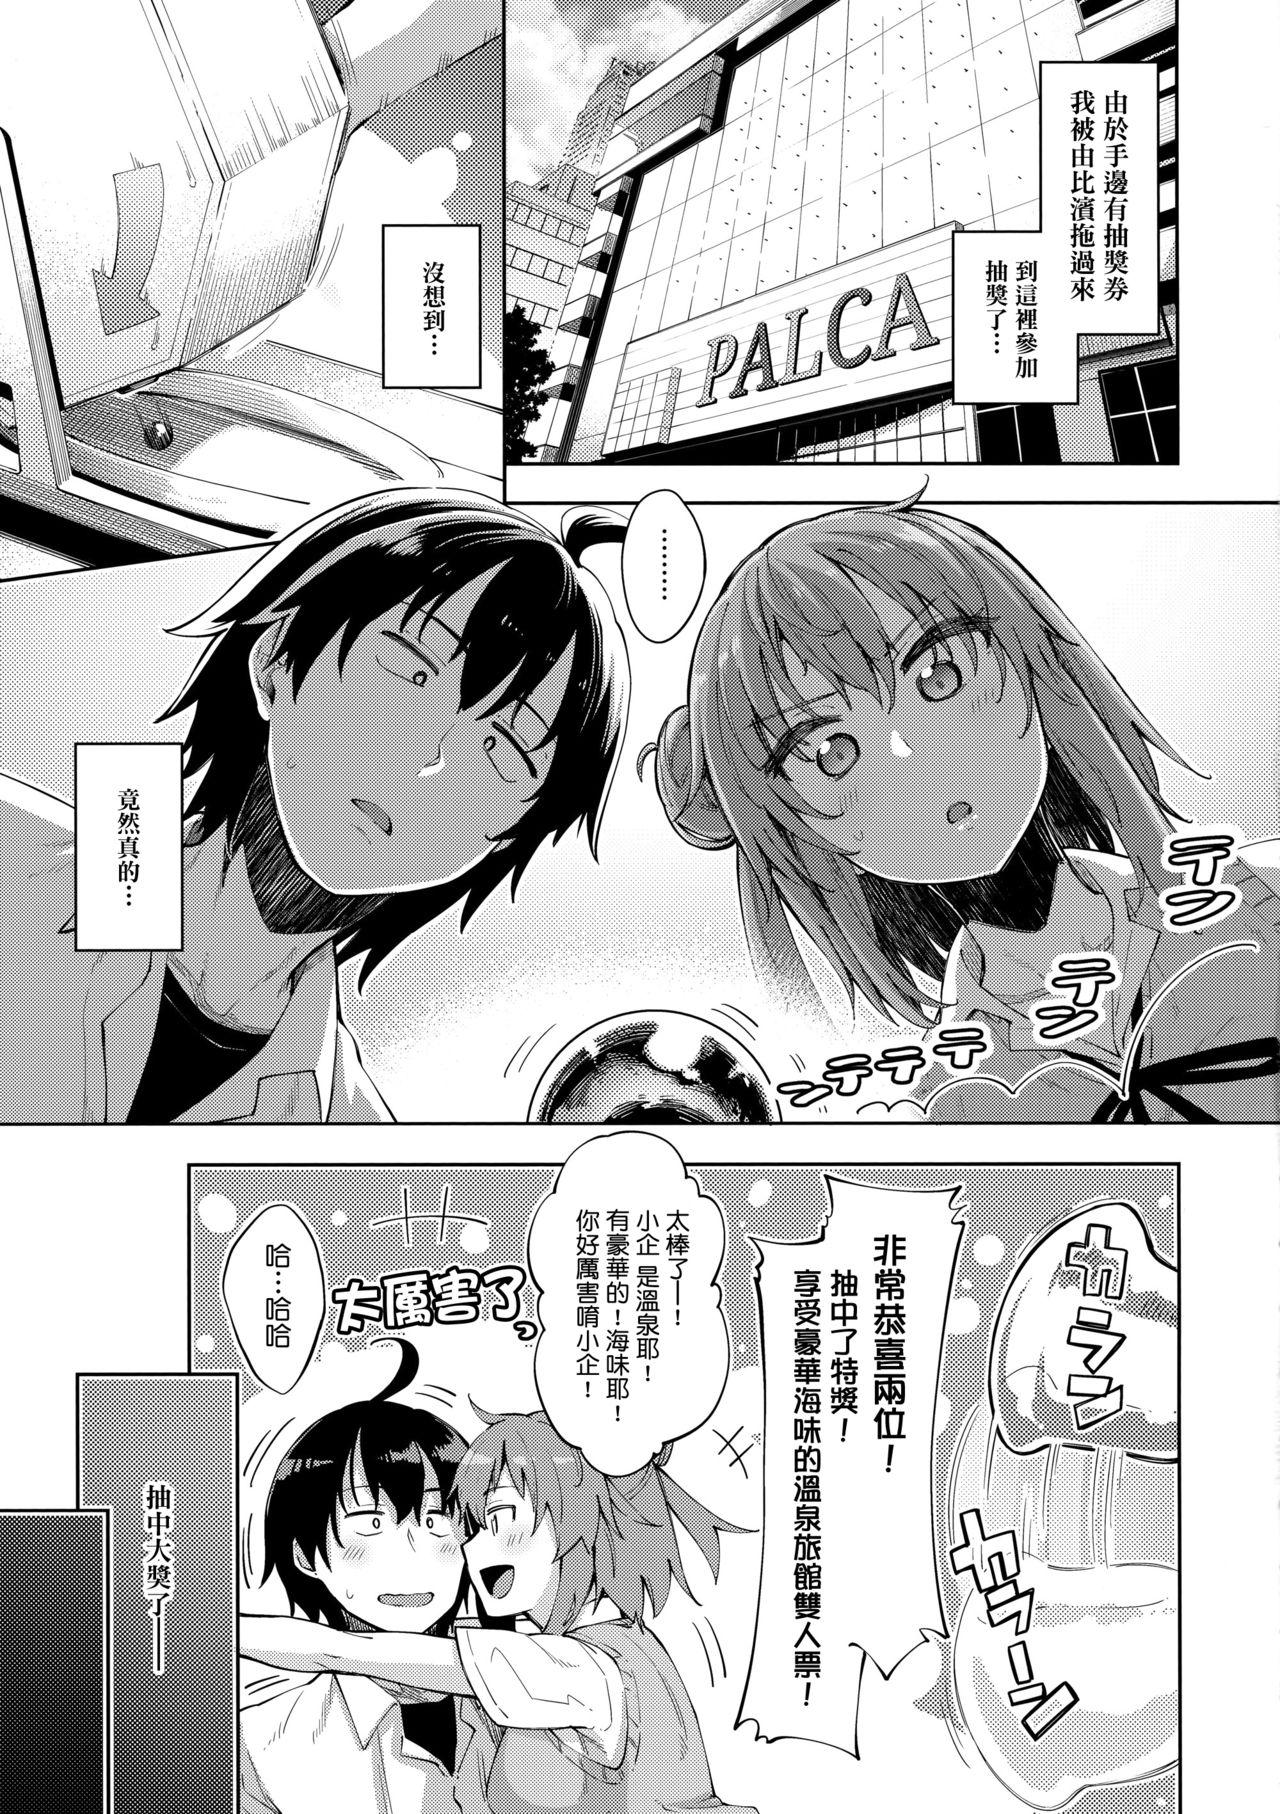 Fellatio LOVE STORY #05 - Yahari ore no seishun love come wa machigatteiru Punk - Page 5